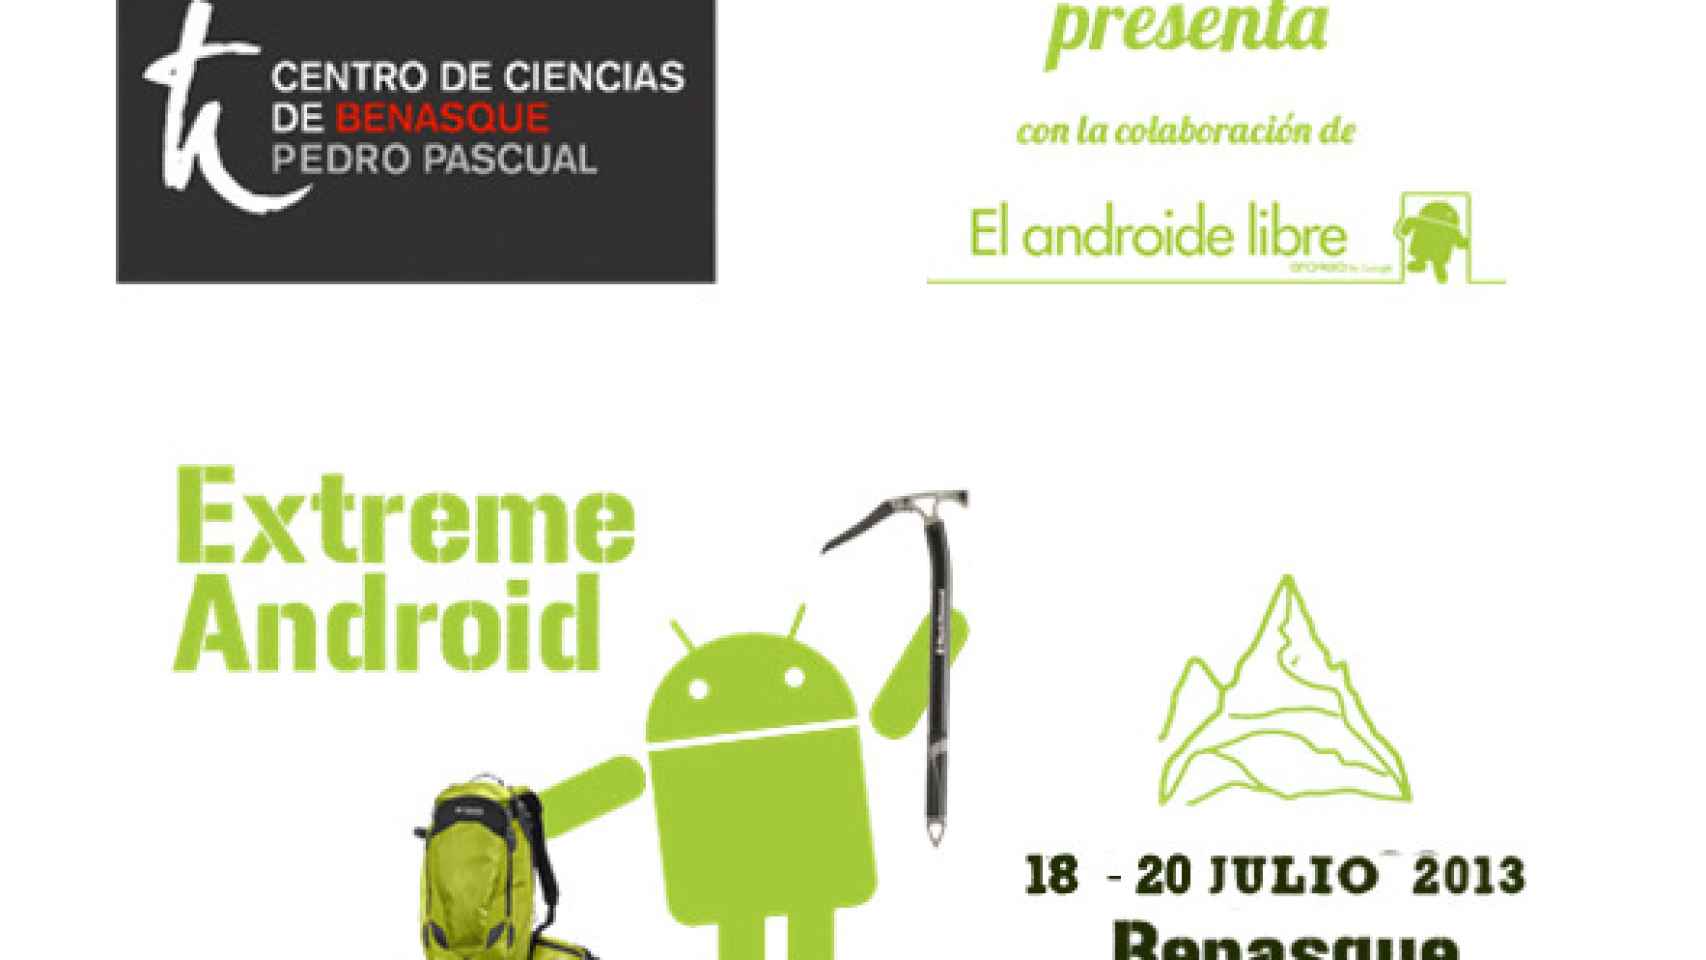 [Remember] Extreme Android 2014: un concurso de programación en el Pirineo co-organizado por El Androide Libre